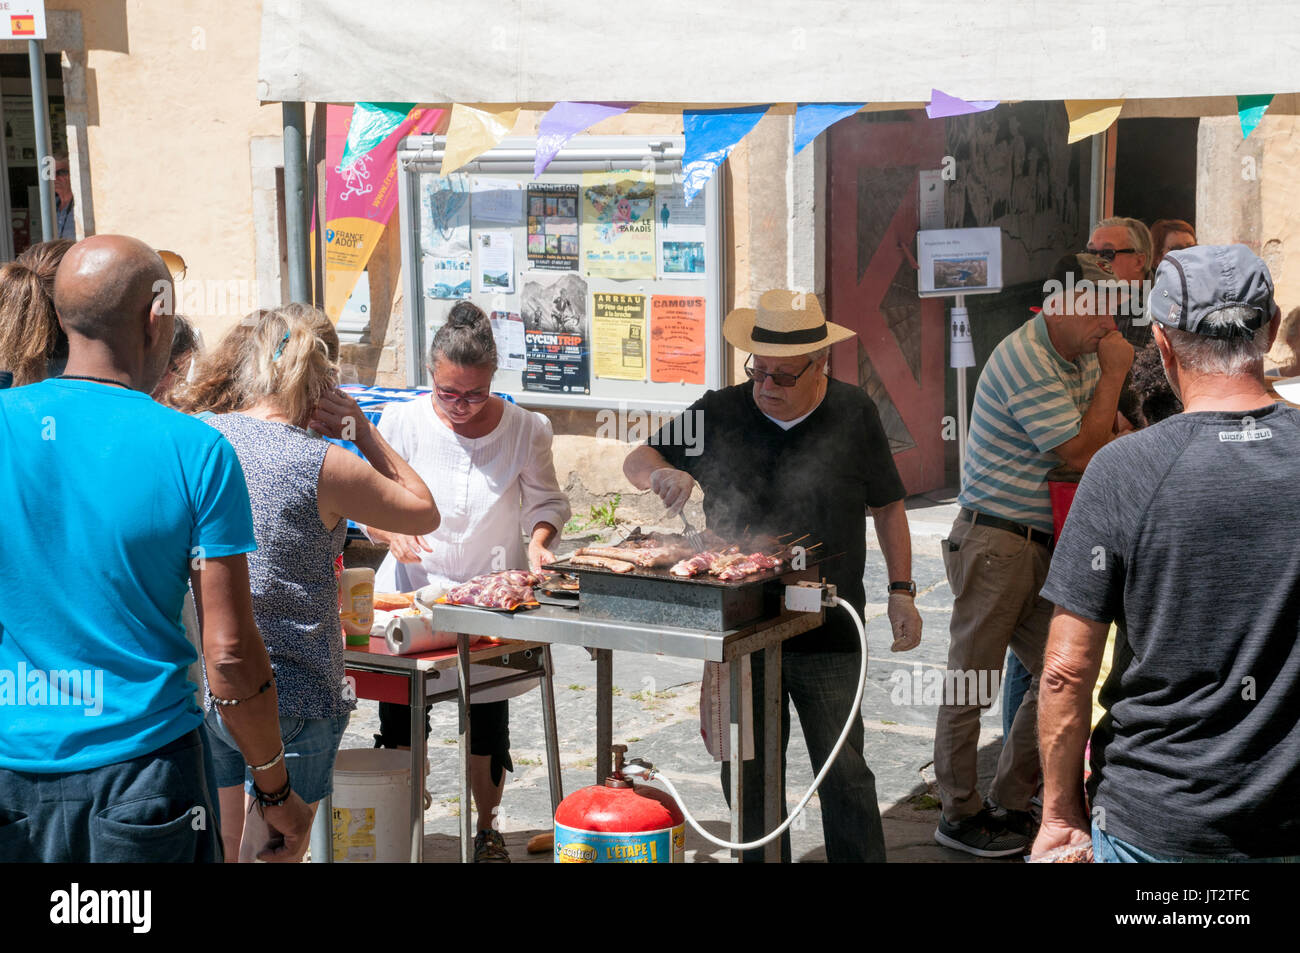 Sunday Market at Arreau, Hautes-Pyrénées, France. Stock Photo